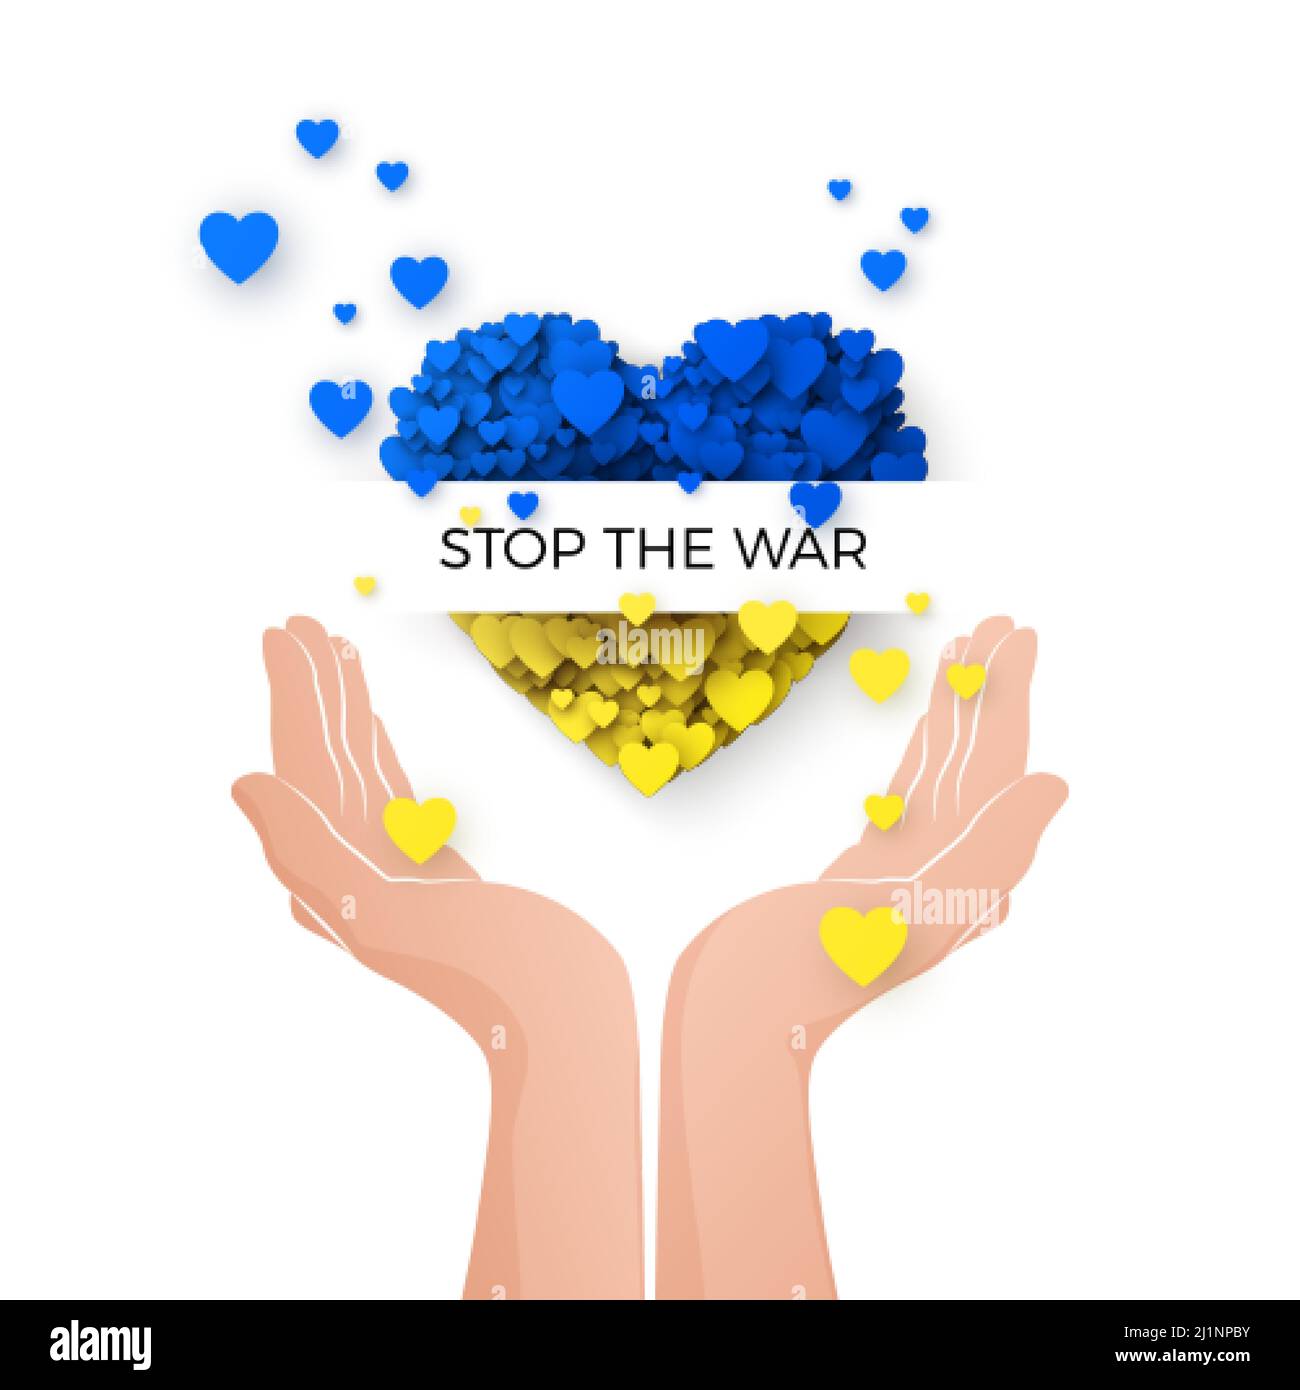 Hände mit Herz Silhouette in ukrainischen Flaggen Farben. Unterstützt die Ukraine im Krieg. Stoppt die militärische Invasion. Betet für die Ukraine. Rettet Menschen und gebt ihnen Hoffnung. Stock Vektor